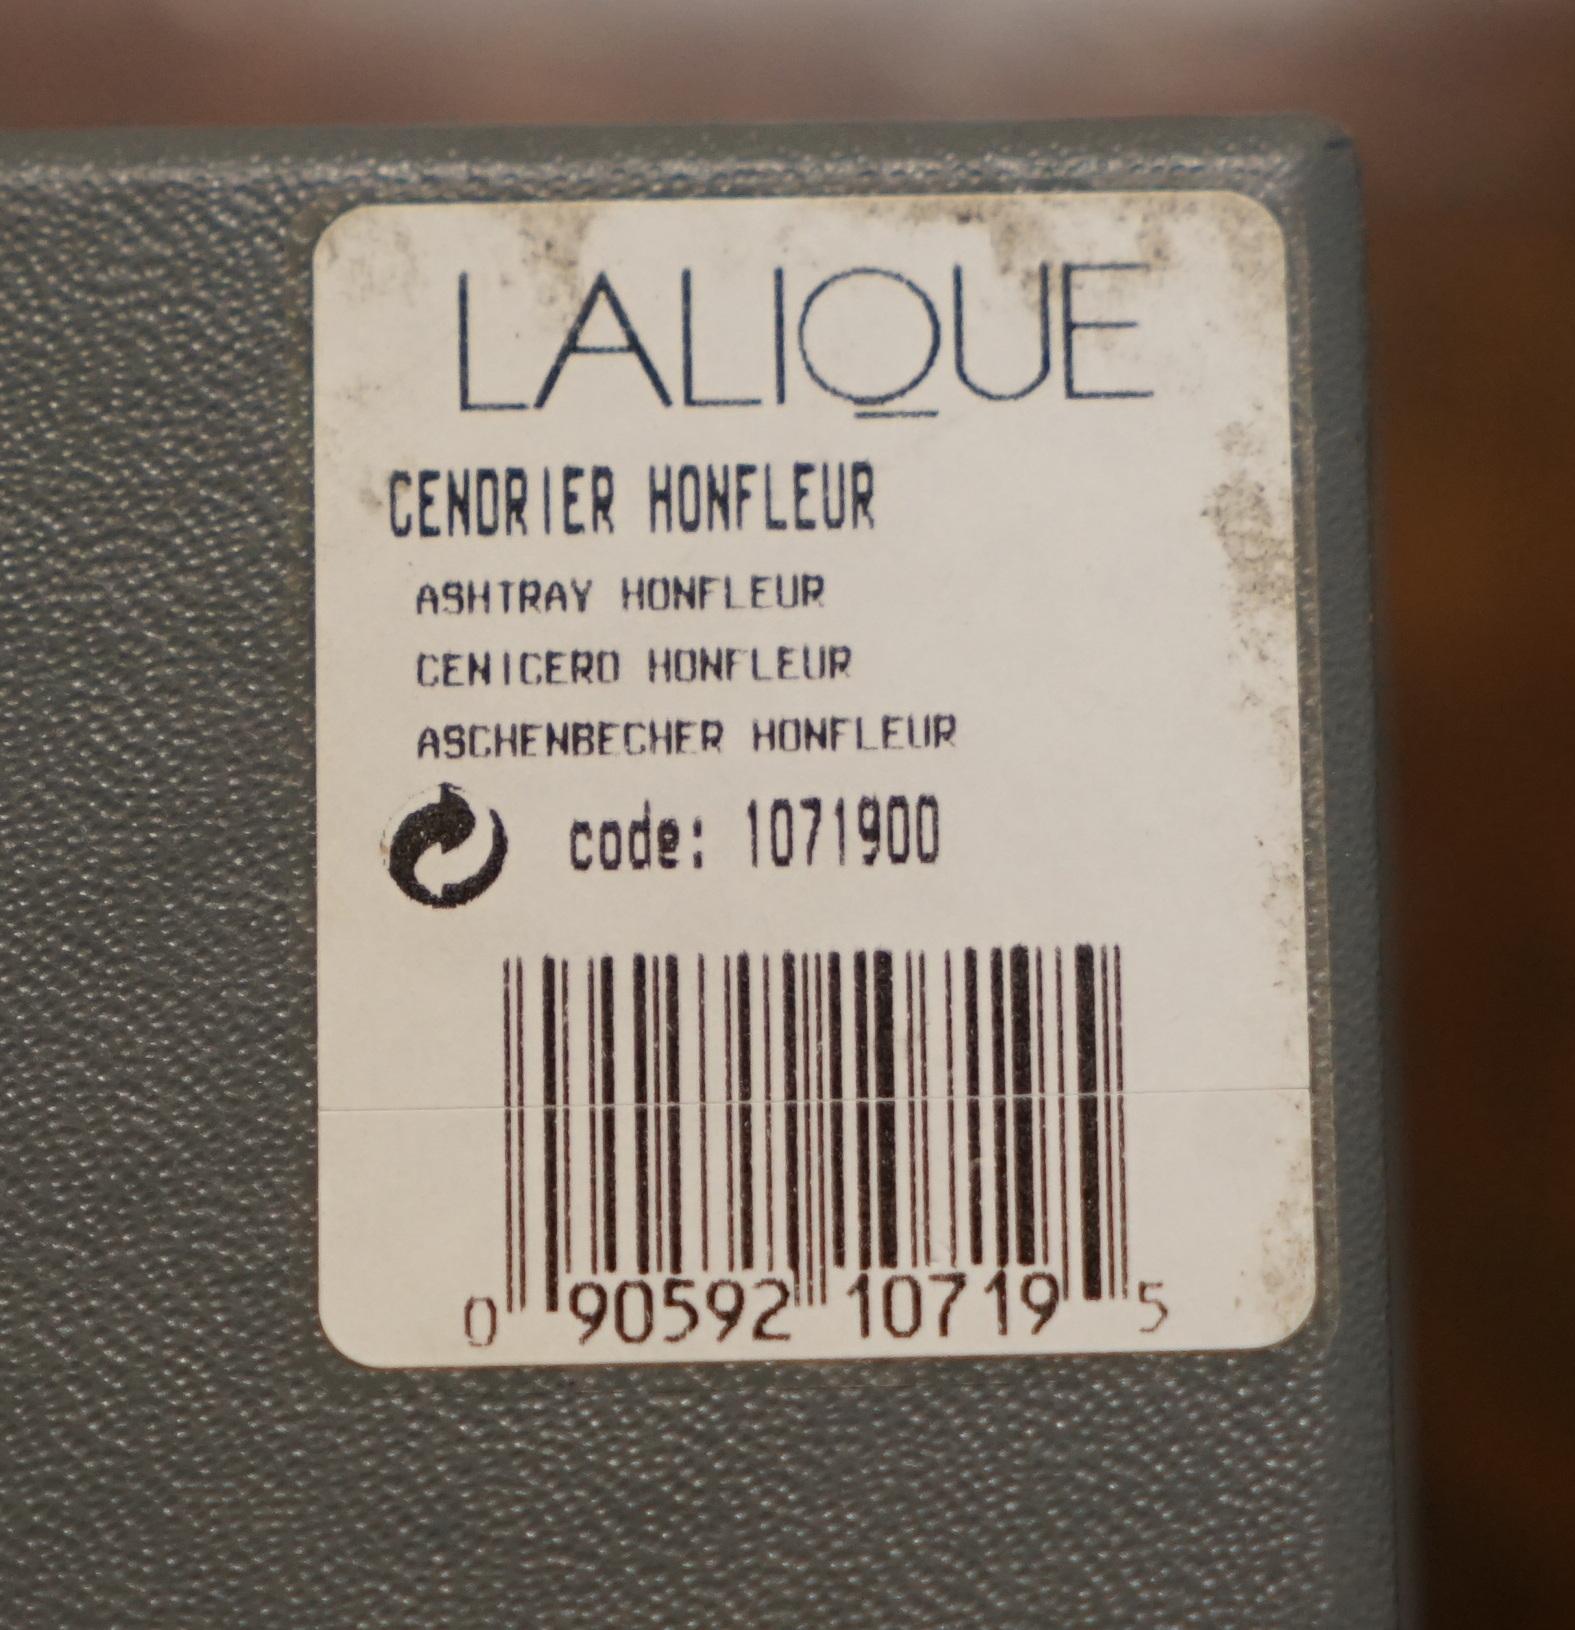 Paar brandneue Rene Lalique Cendrier Honfleur Kleine Geschirrschalen, im Karton im Angebot 7